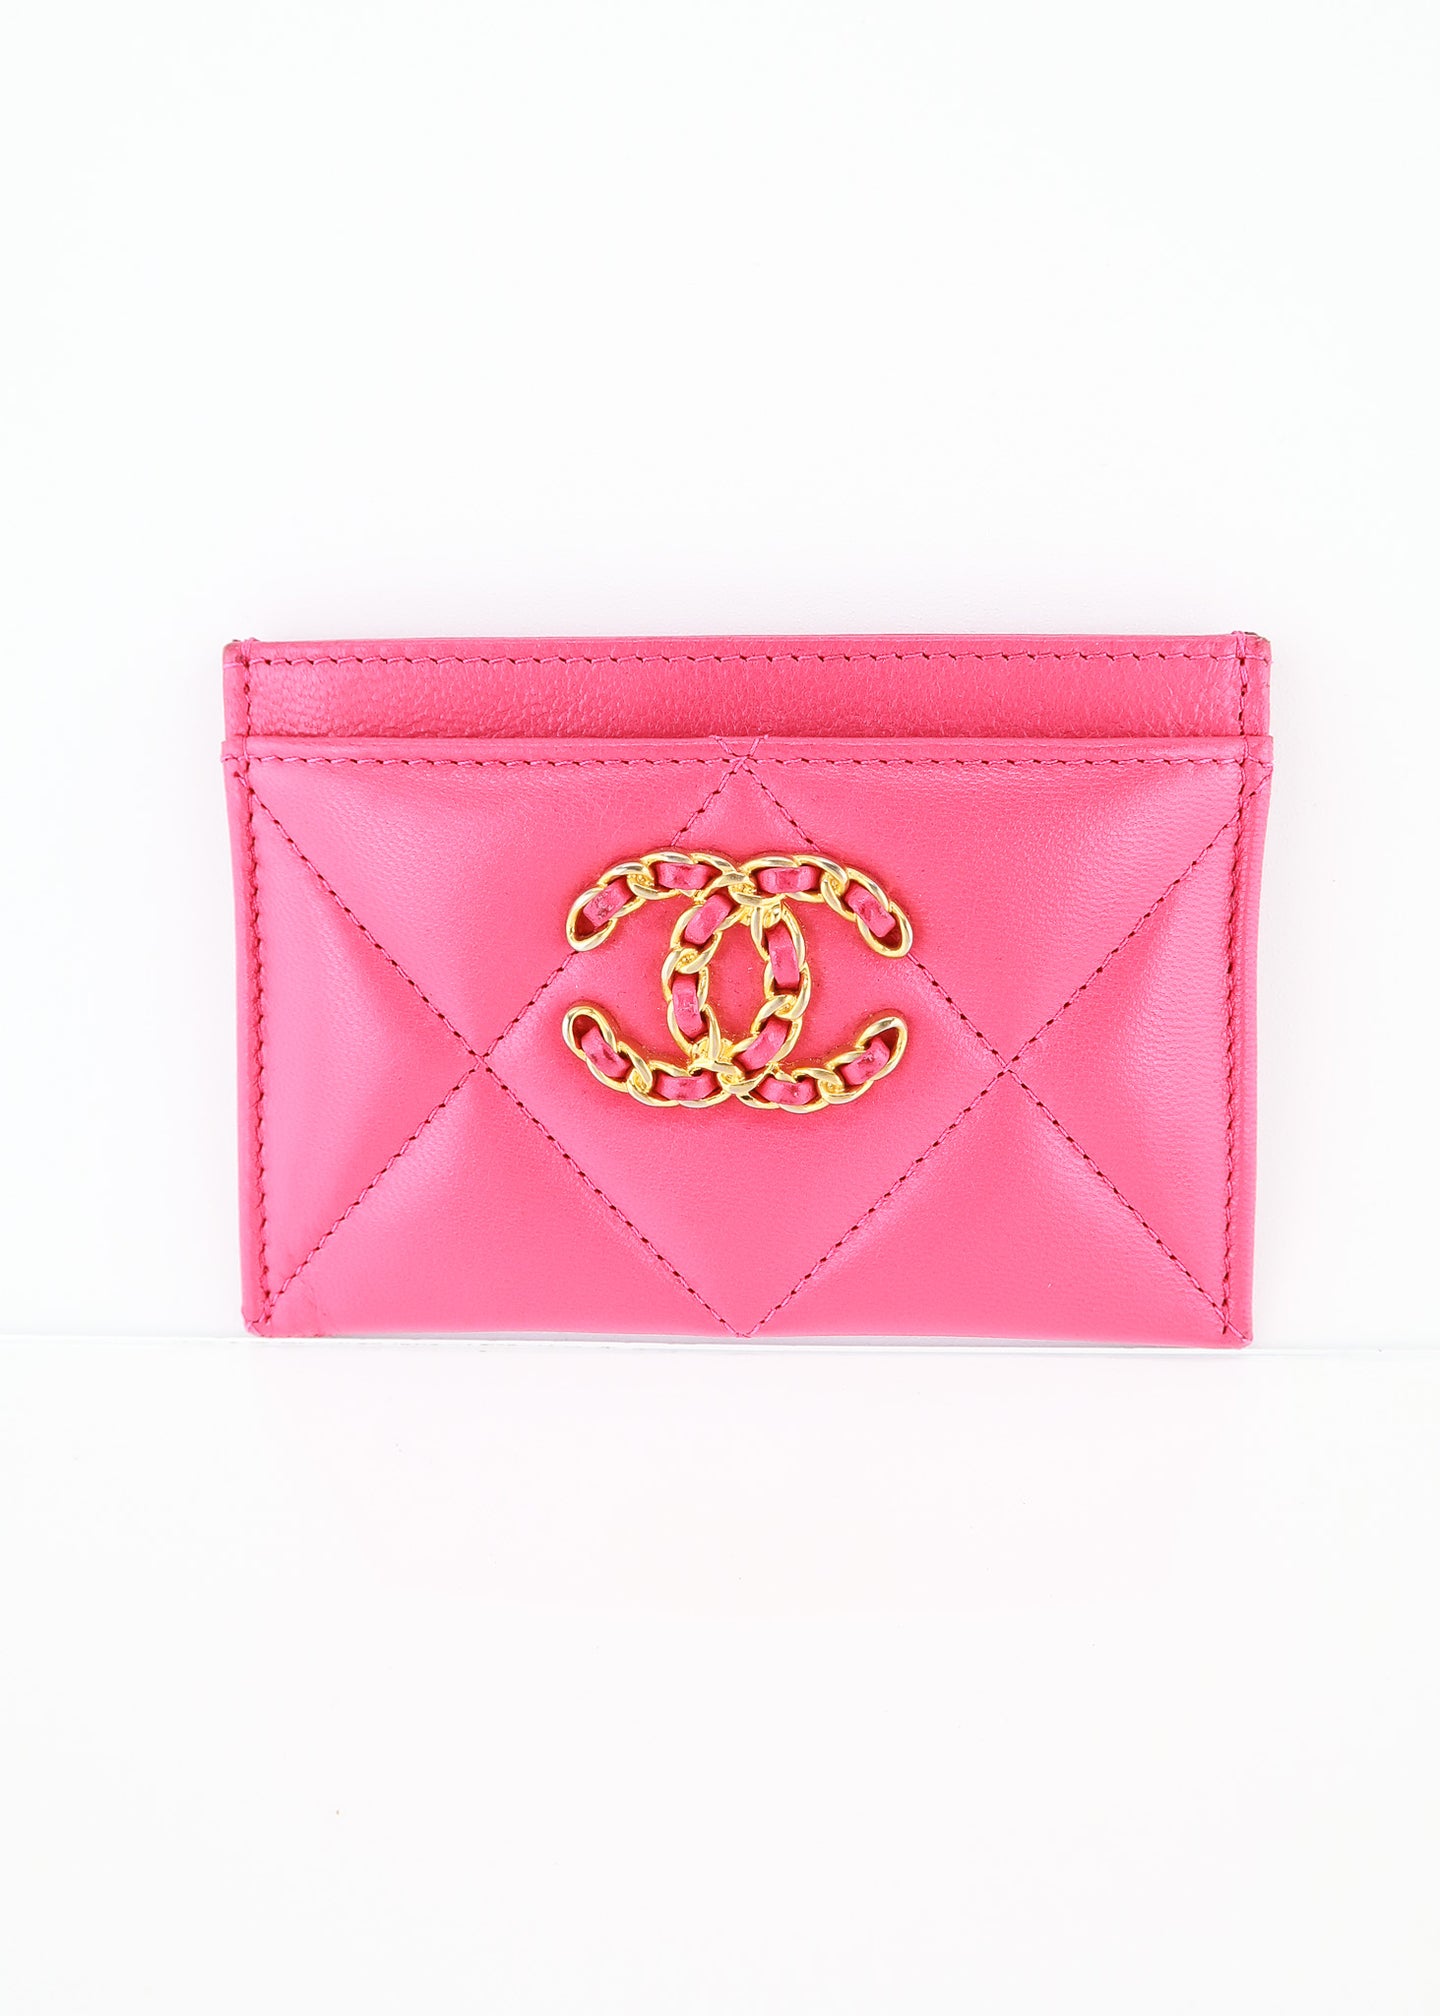 Chanel 19 Card Holder Dark Pink